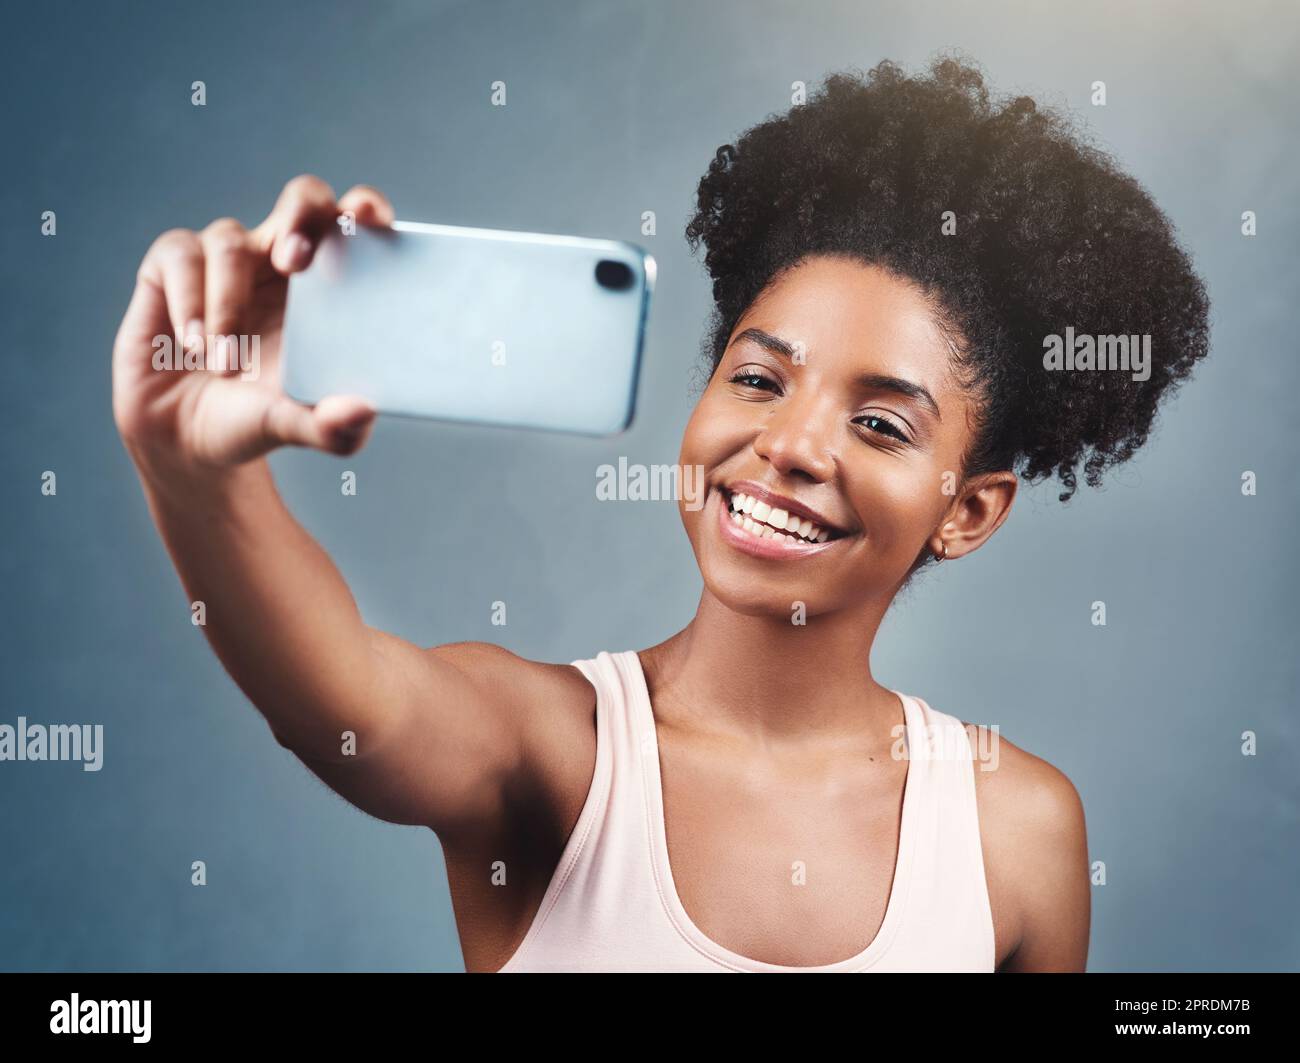 Denn ein Selfie am Tag hält das Vertrauen am Leben. Eine attraktive junge Frau, die ein Selfie macht. Stockfoto